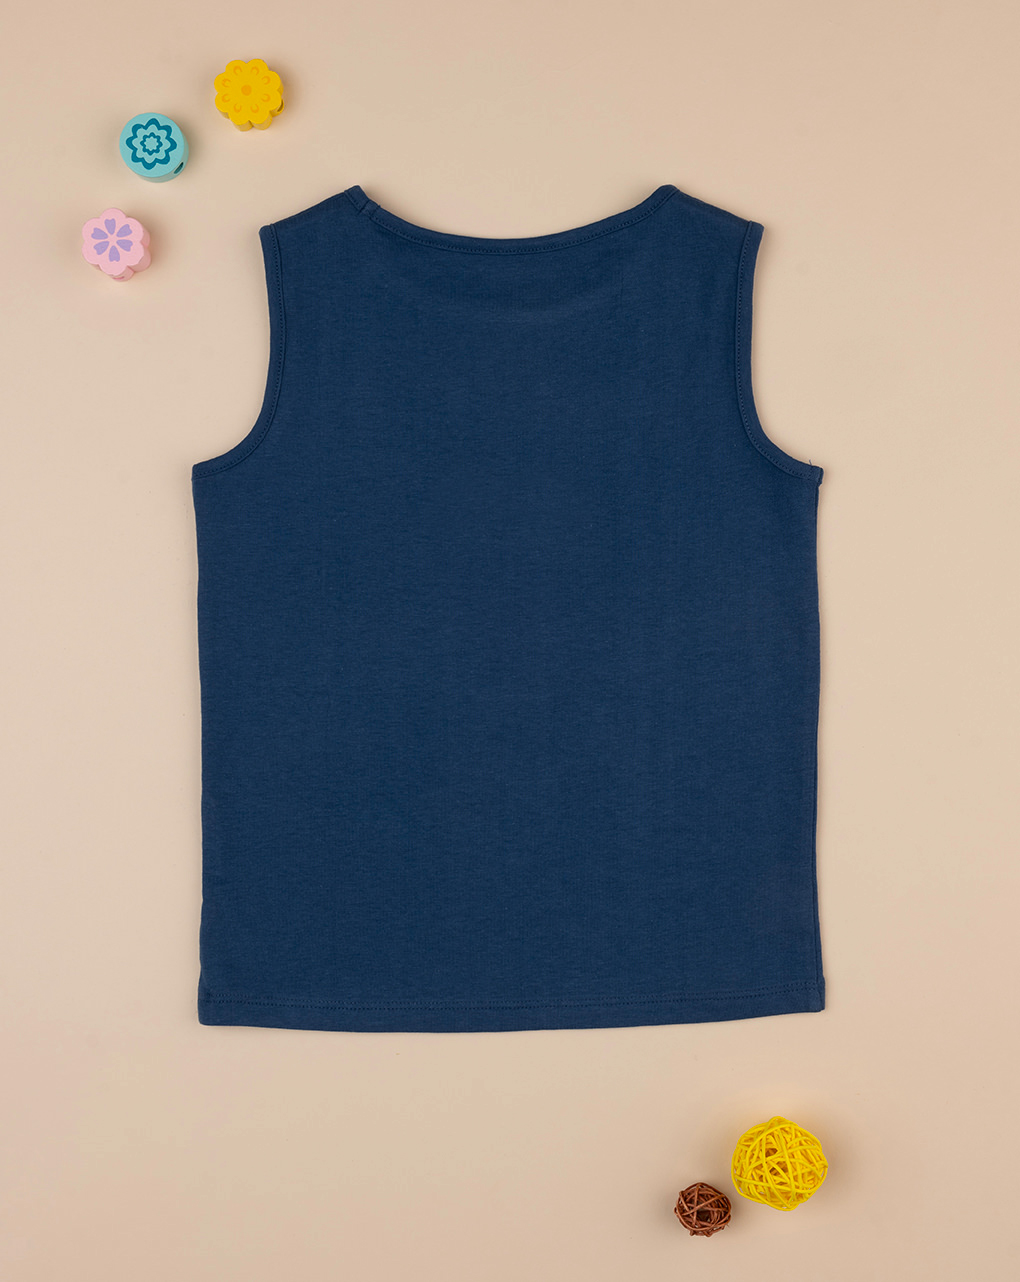 παιδική αμάνικη μπλούζα μπλε με μαργαρίτες για κορίτσι - Prénatal